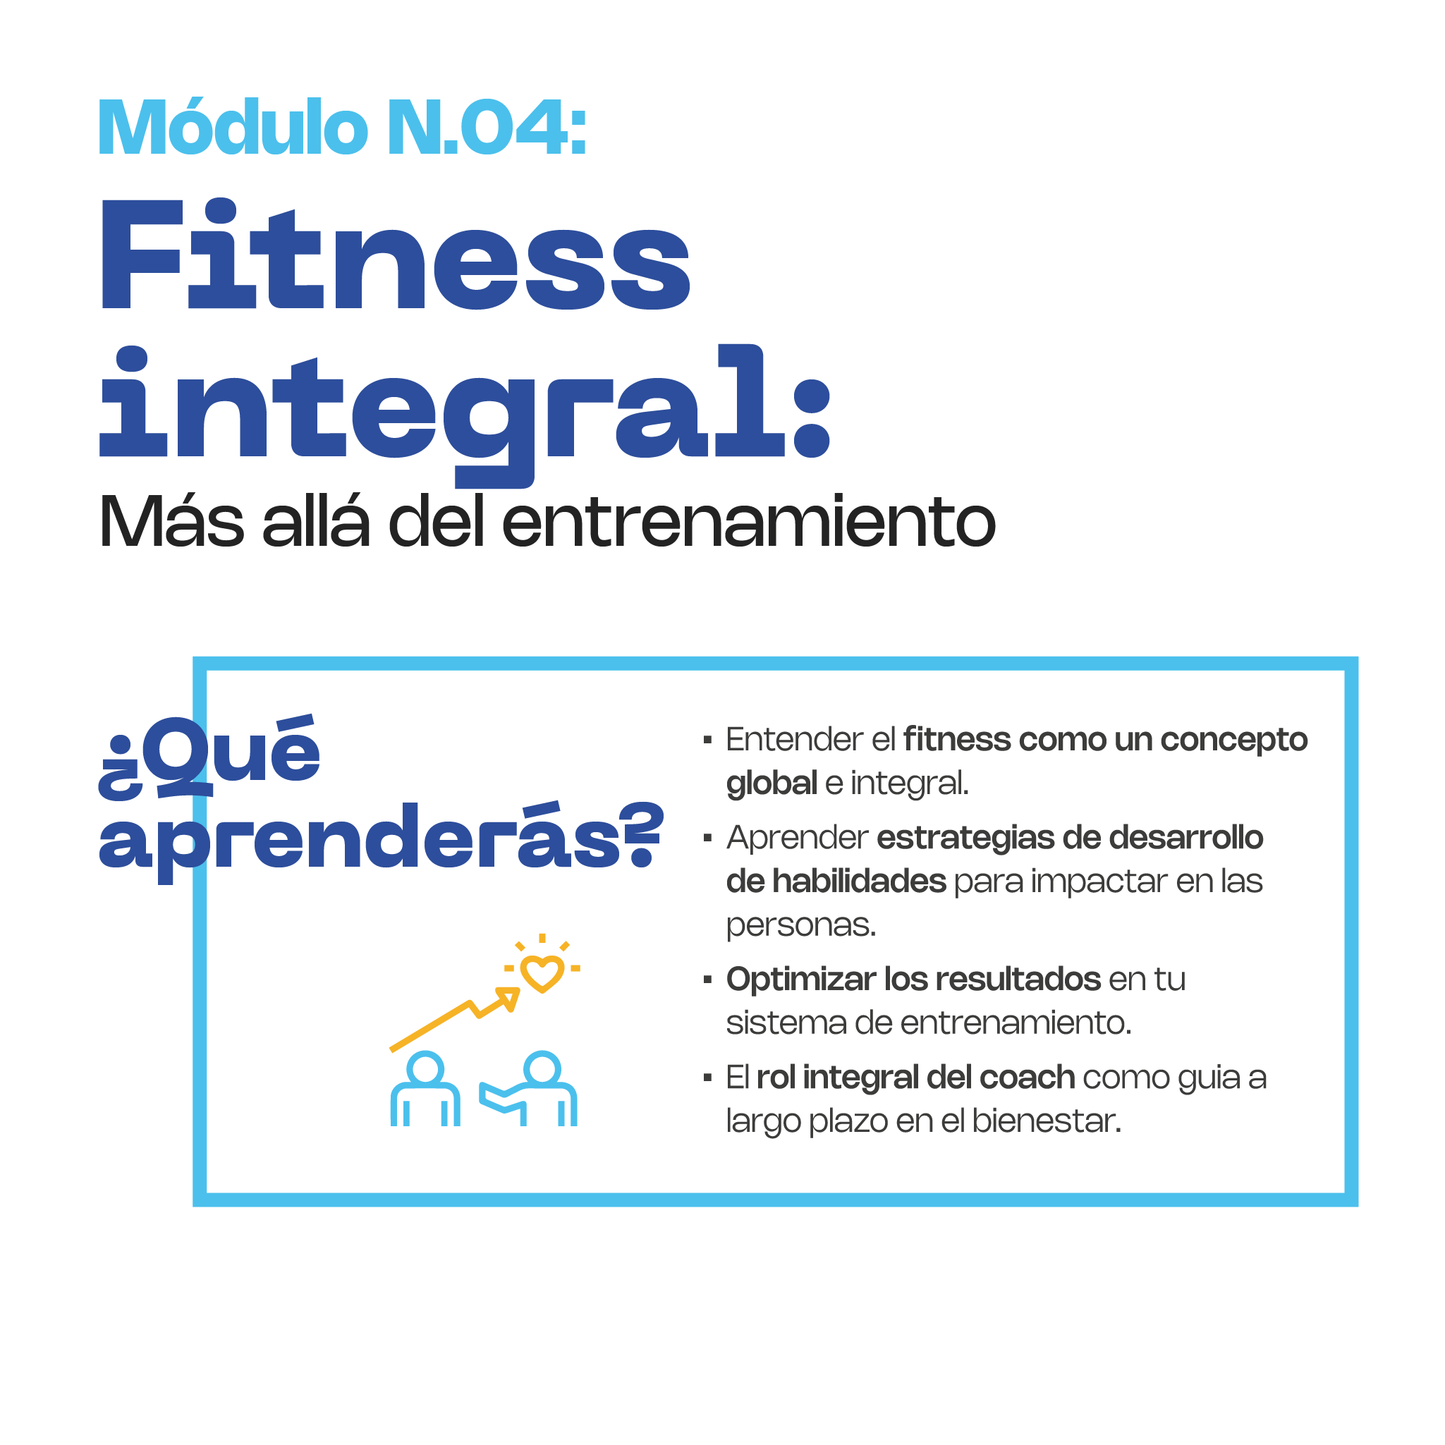 MÓDULO 4: Fitness Integral, más allá del entrenamiento